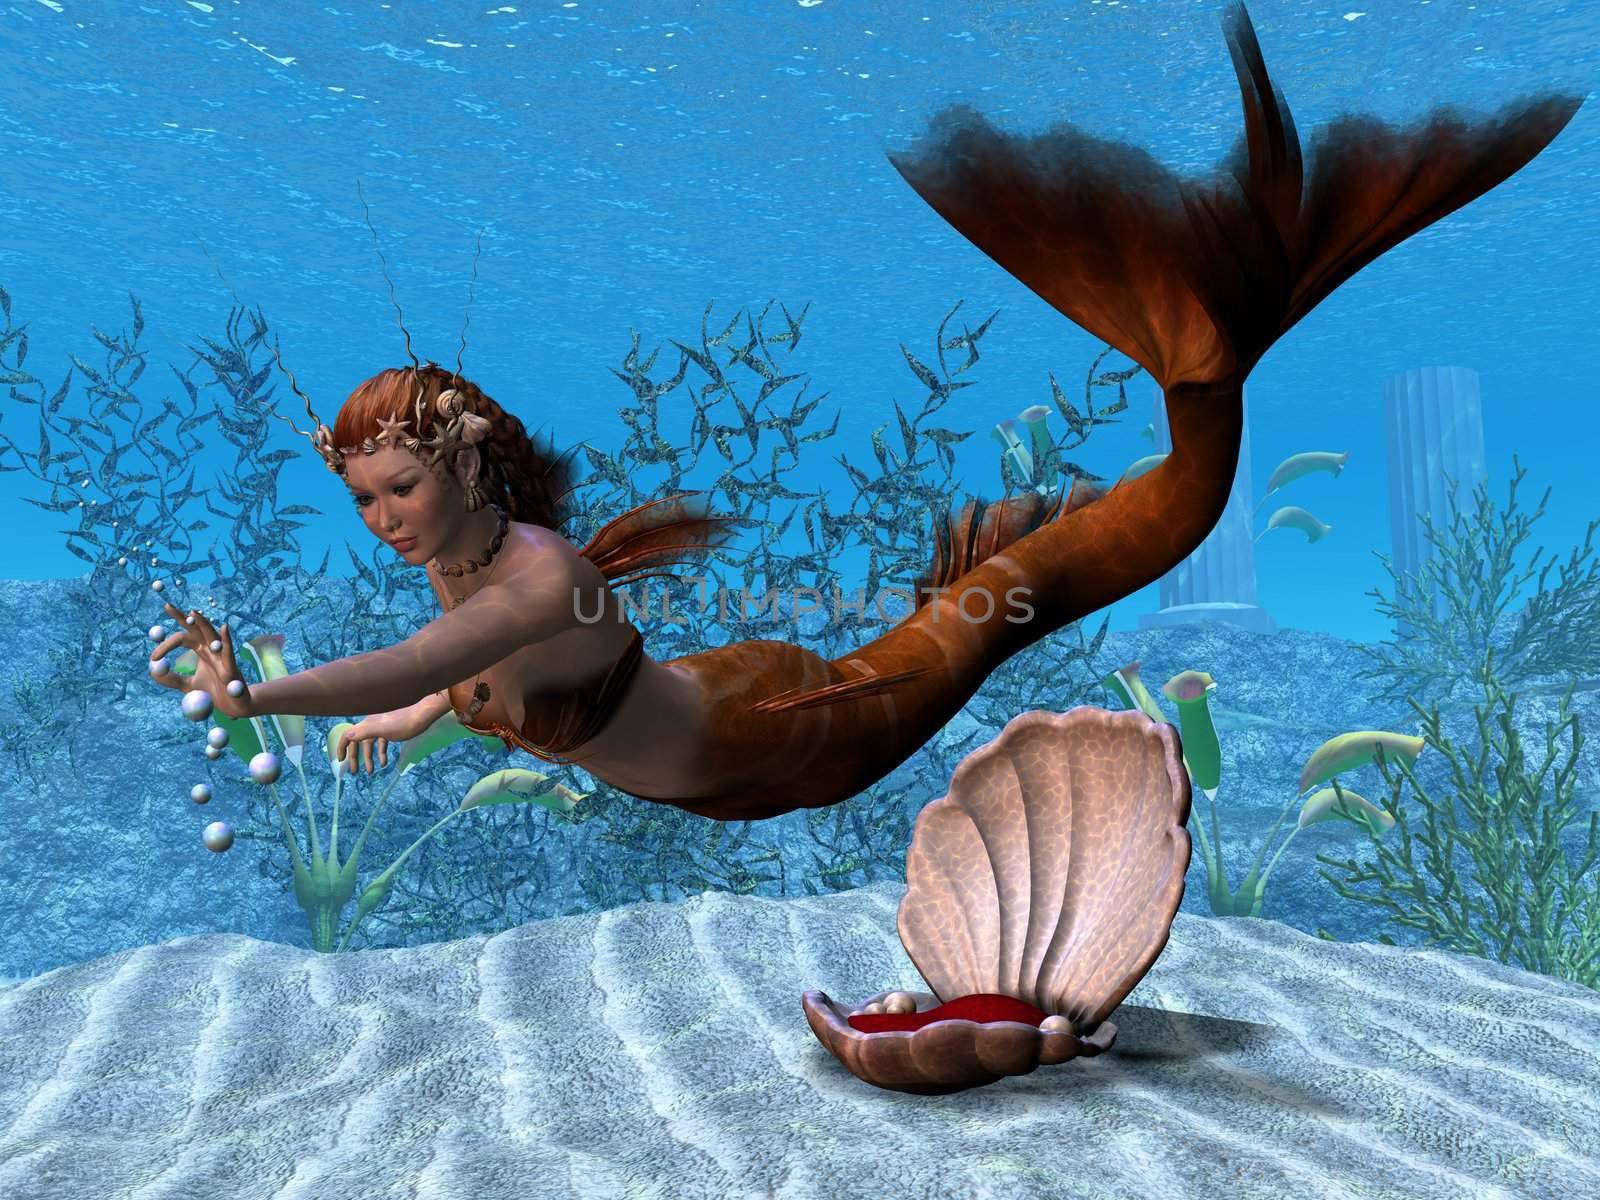 Underwater Mermaid by Catmando